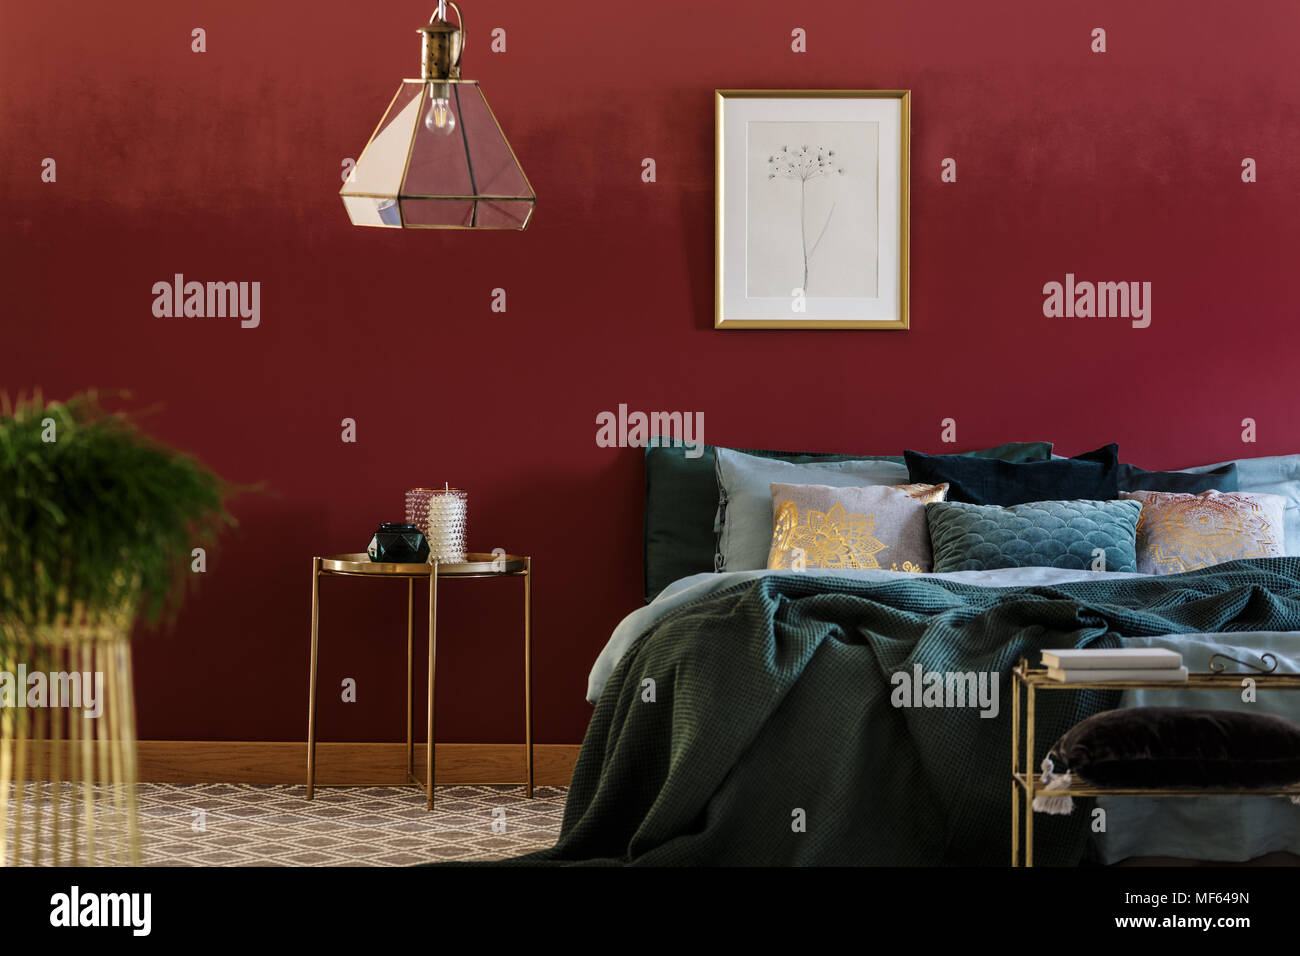 Lit king-size avec plein d'oreillers et couvre-lit vert debout en bourgogne  prix intérieur avec affiche sur un mur Photo Stock - Alamy